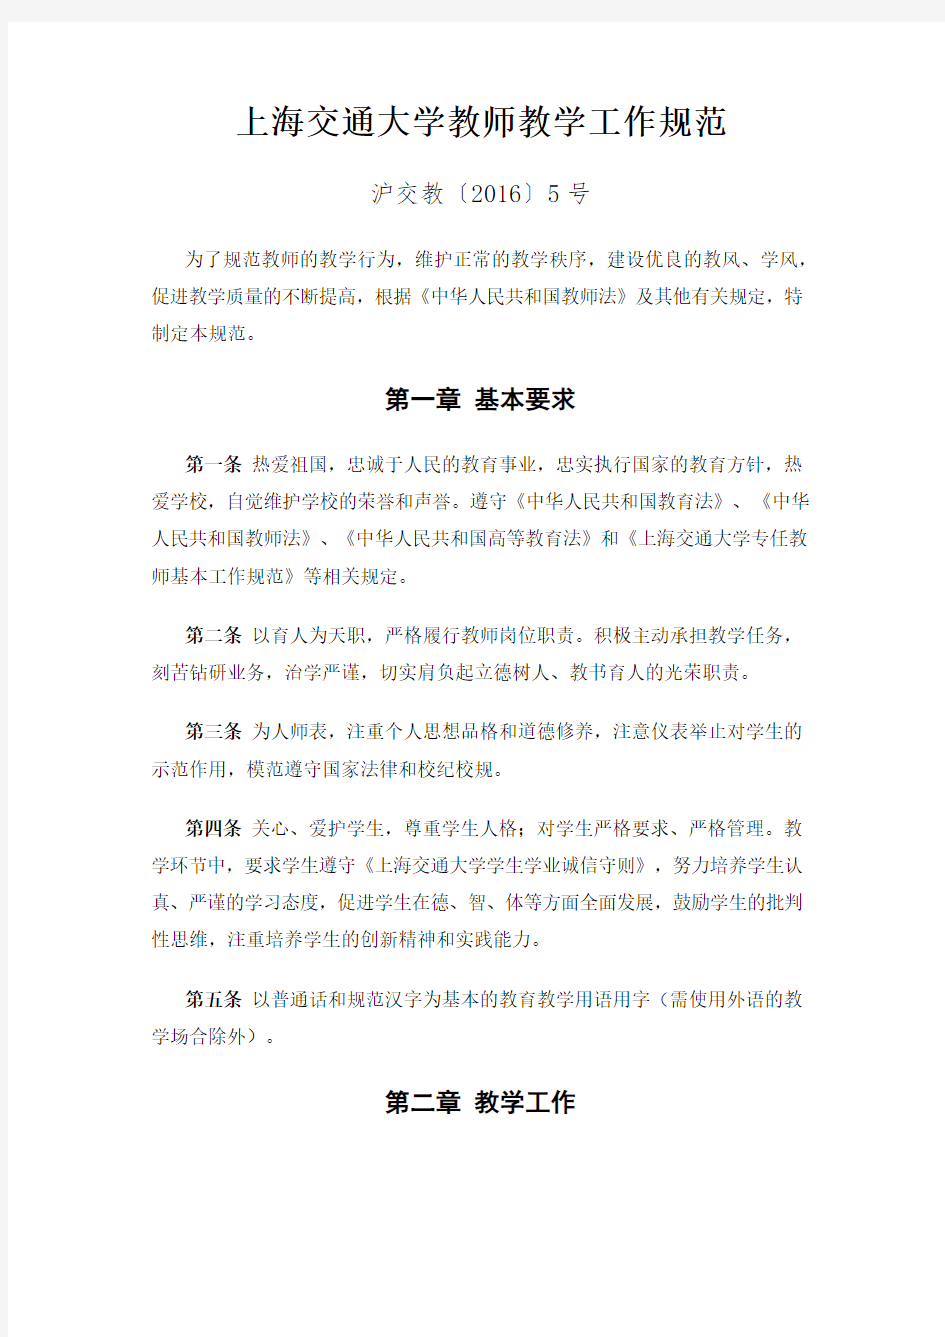 上海交通大学教师教学工作规范